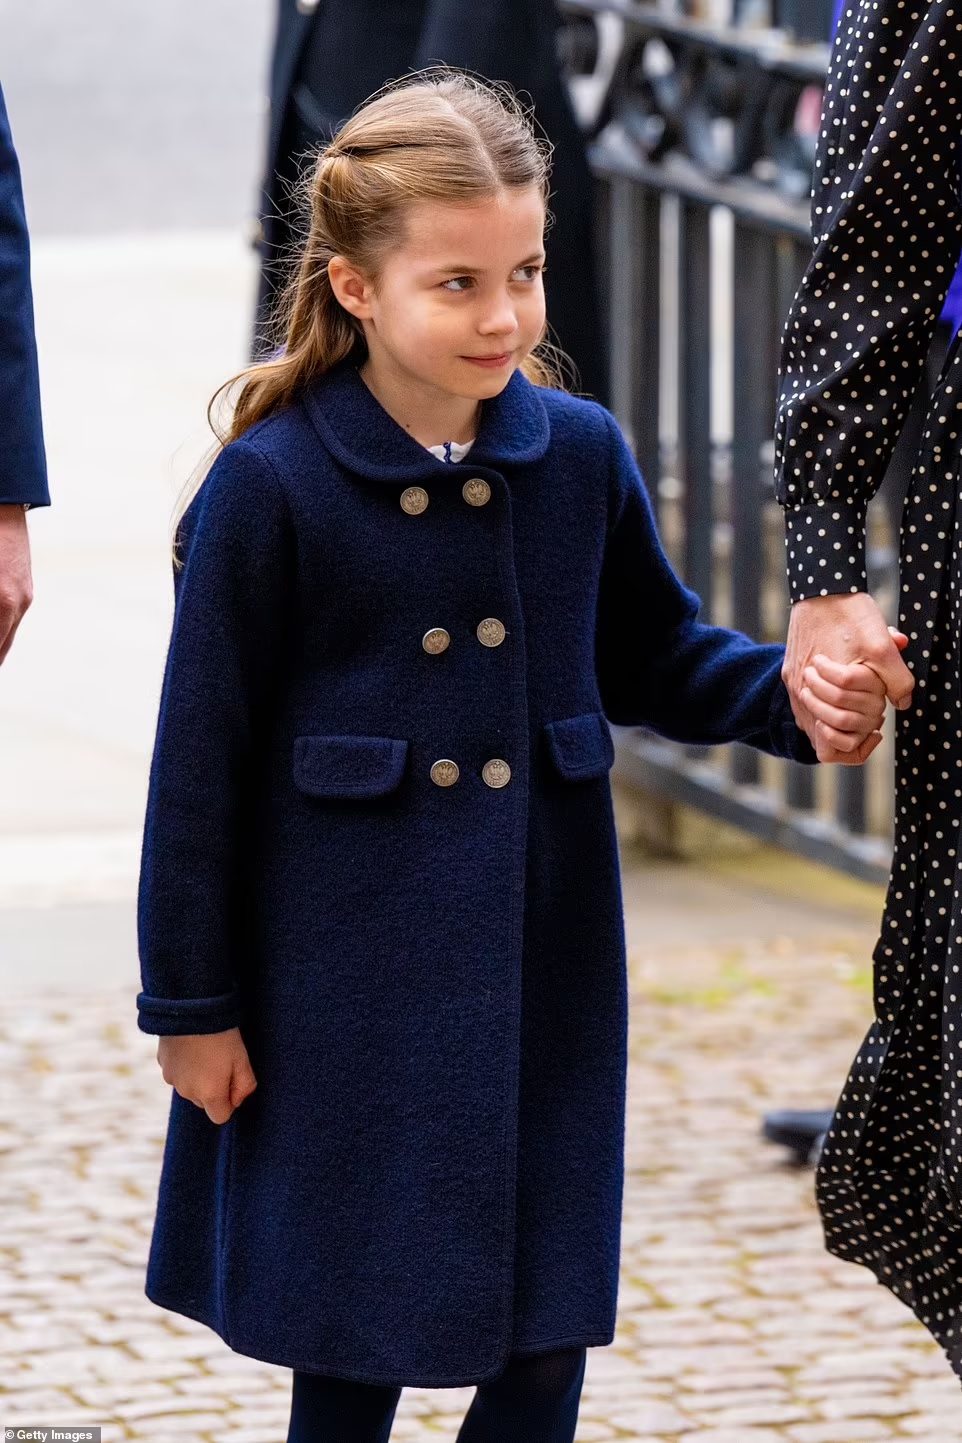 agrandeartedeserfeliz.com - Radiante! Princesa Charlotte comemora 7 anos de vida com adorável sessão de fotos